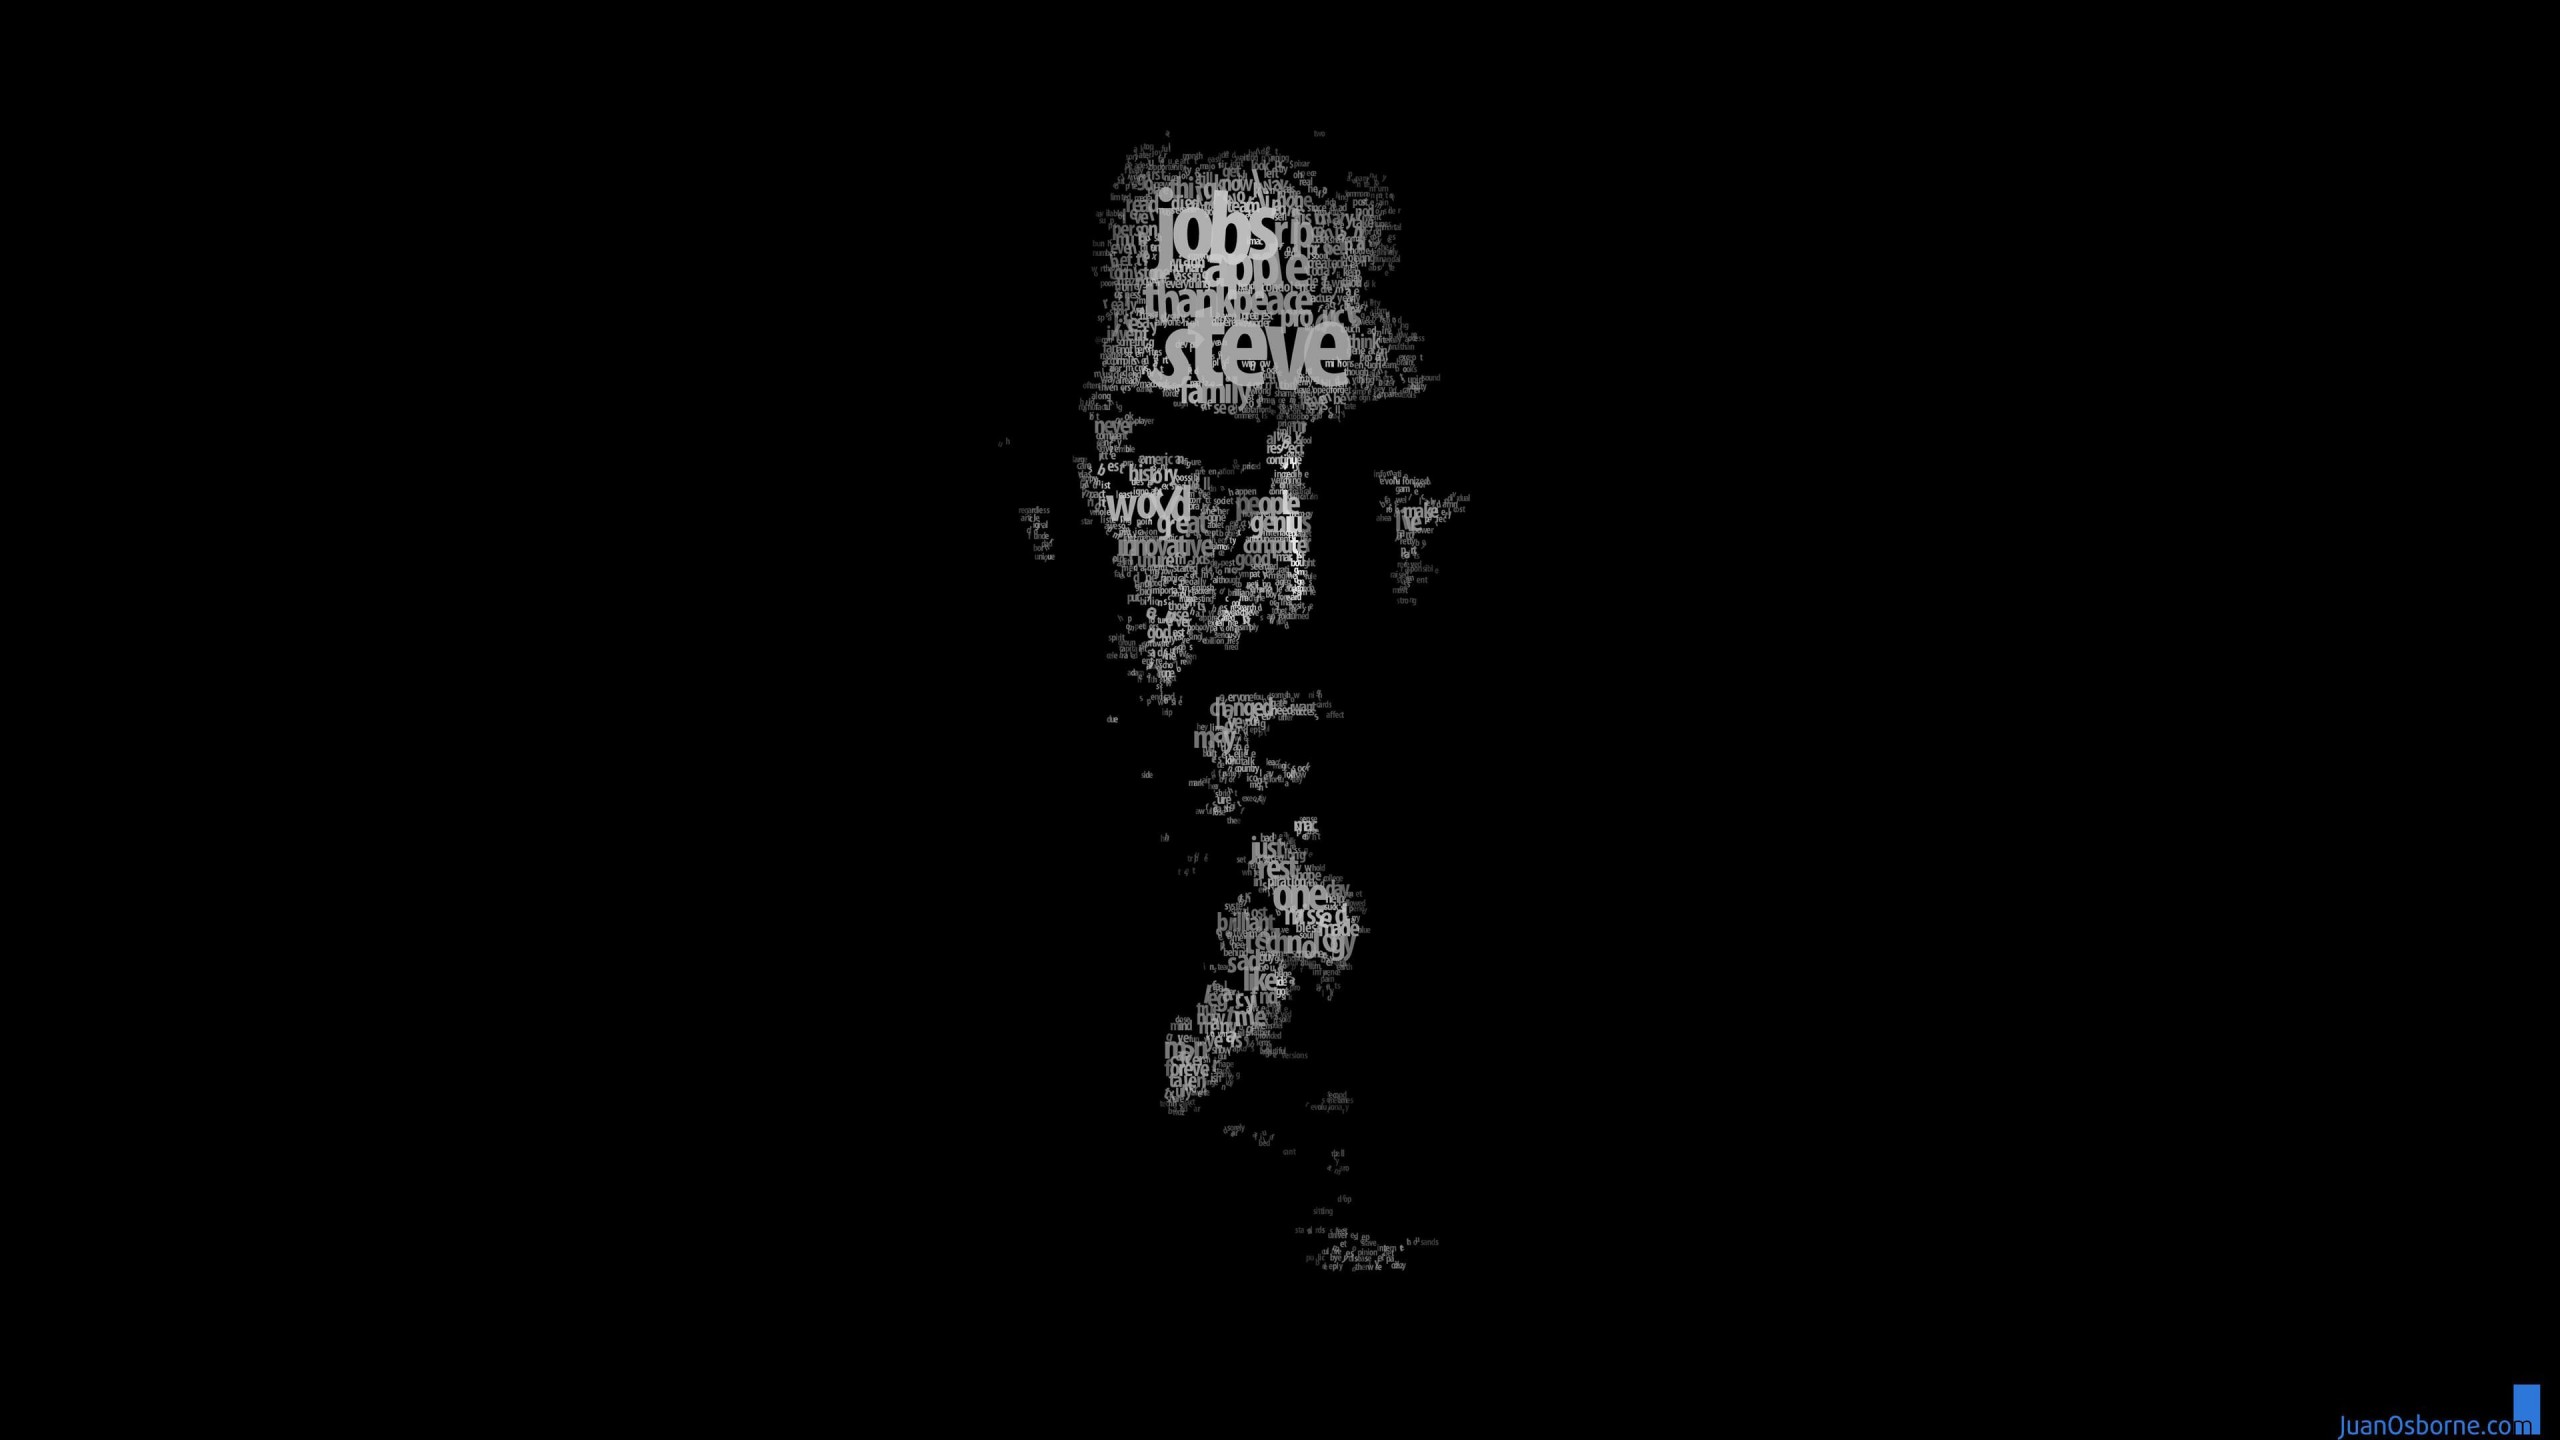 Typeface Portrait of Steve Jobs Wallpaper for Social Media YouTube Channel Art